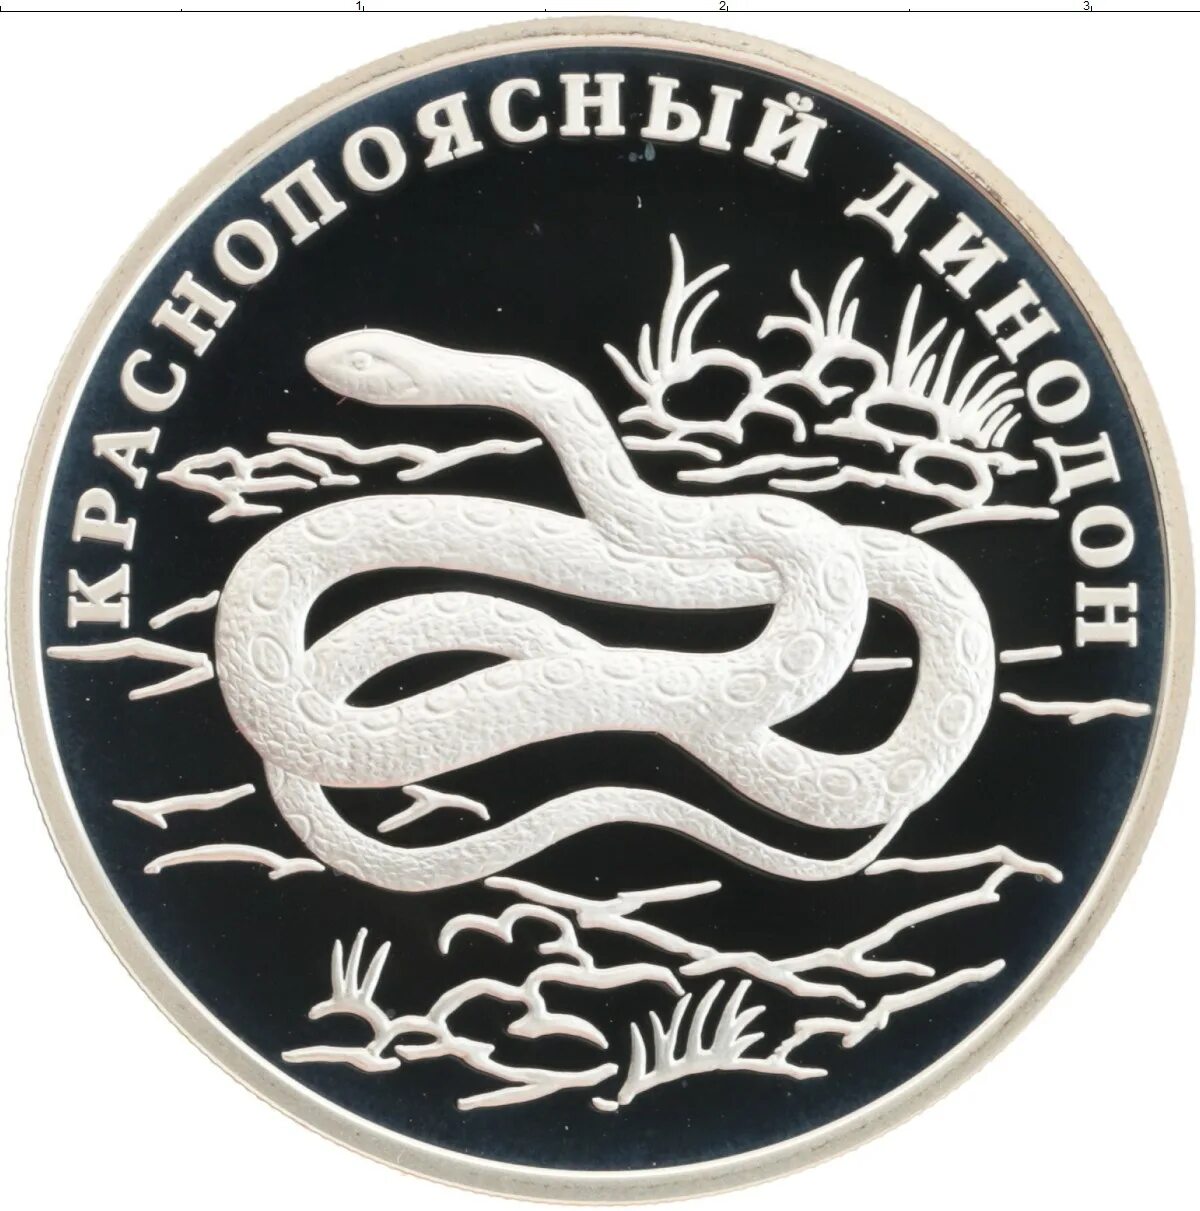 1 Рубль 2007 года Краснопоясный динодон. Длинный рубль из серебра. Монета 700 лет российскому рублю 24.9гр.